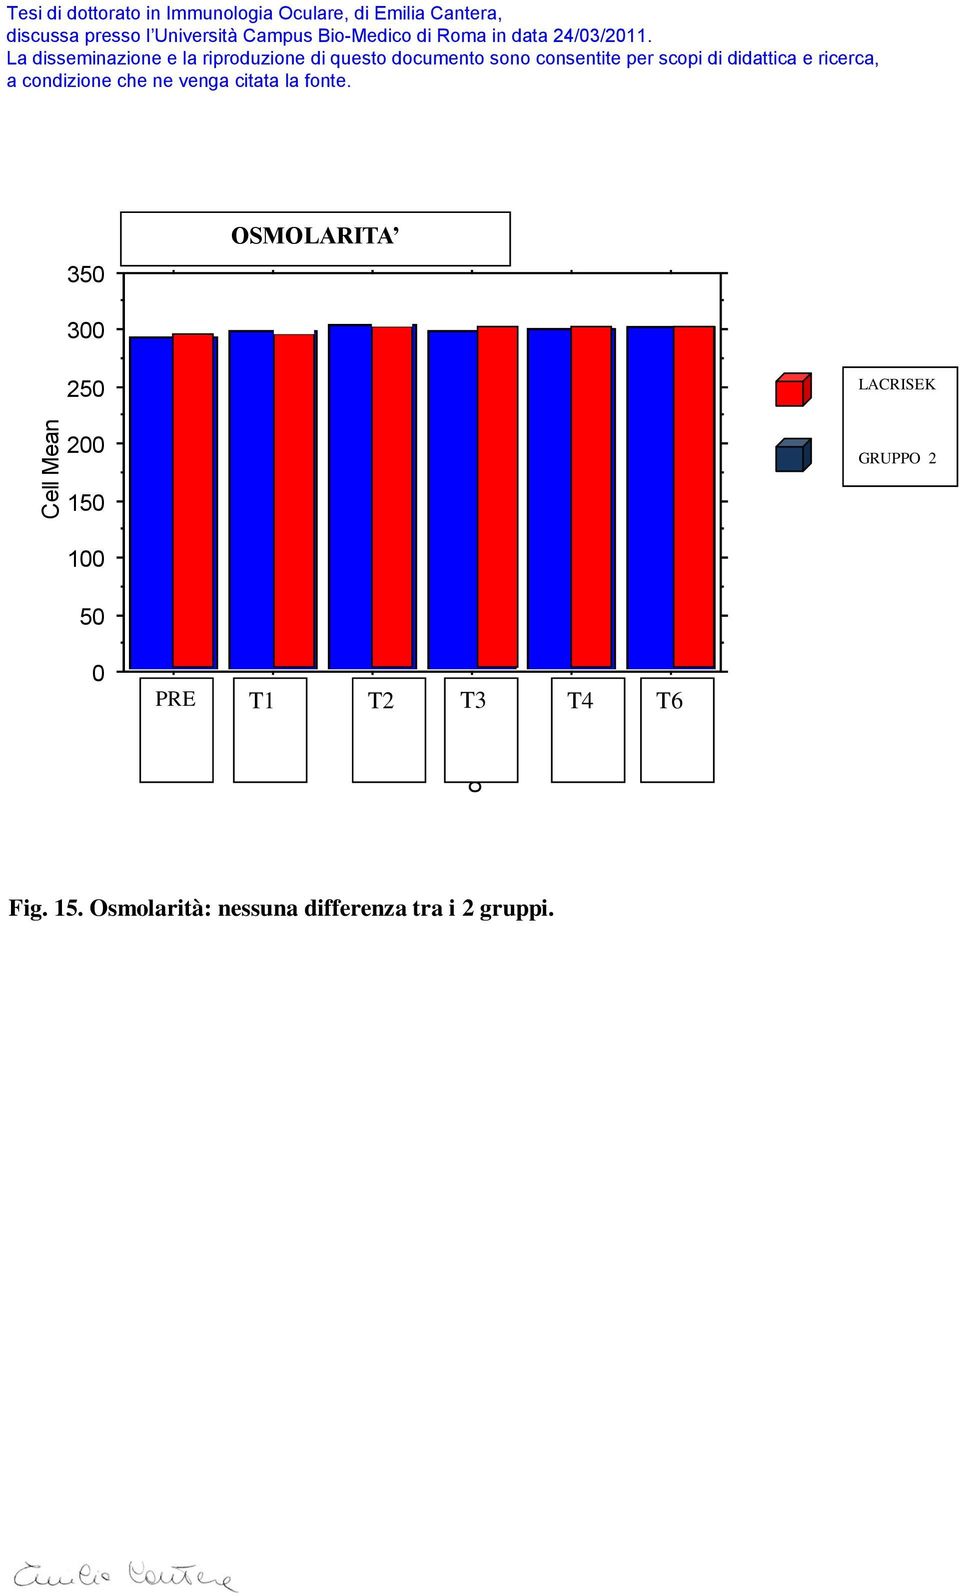 OSMOLARITA Cell Bar Chart 300 250 LACRISEK 200 GRUPPO 2 150 100 50 0 PRE T1 T2 T3 T4 T6 350